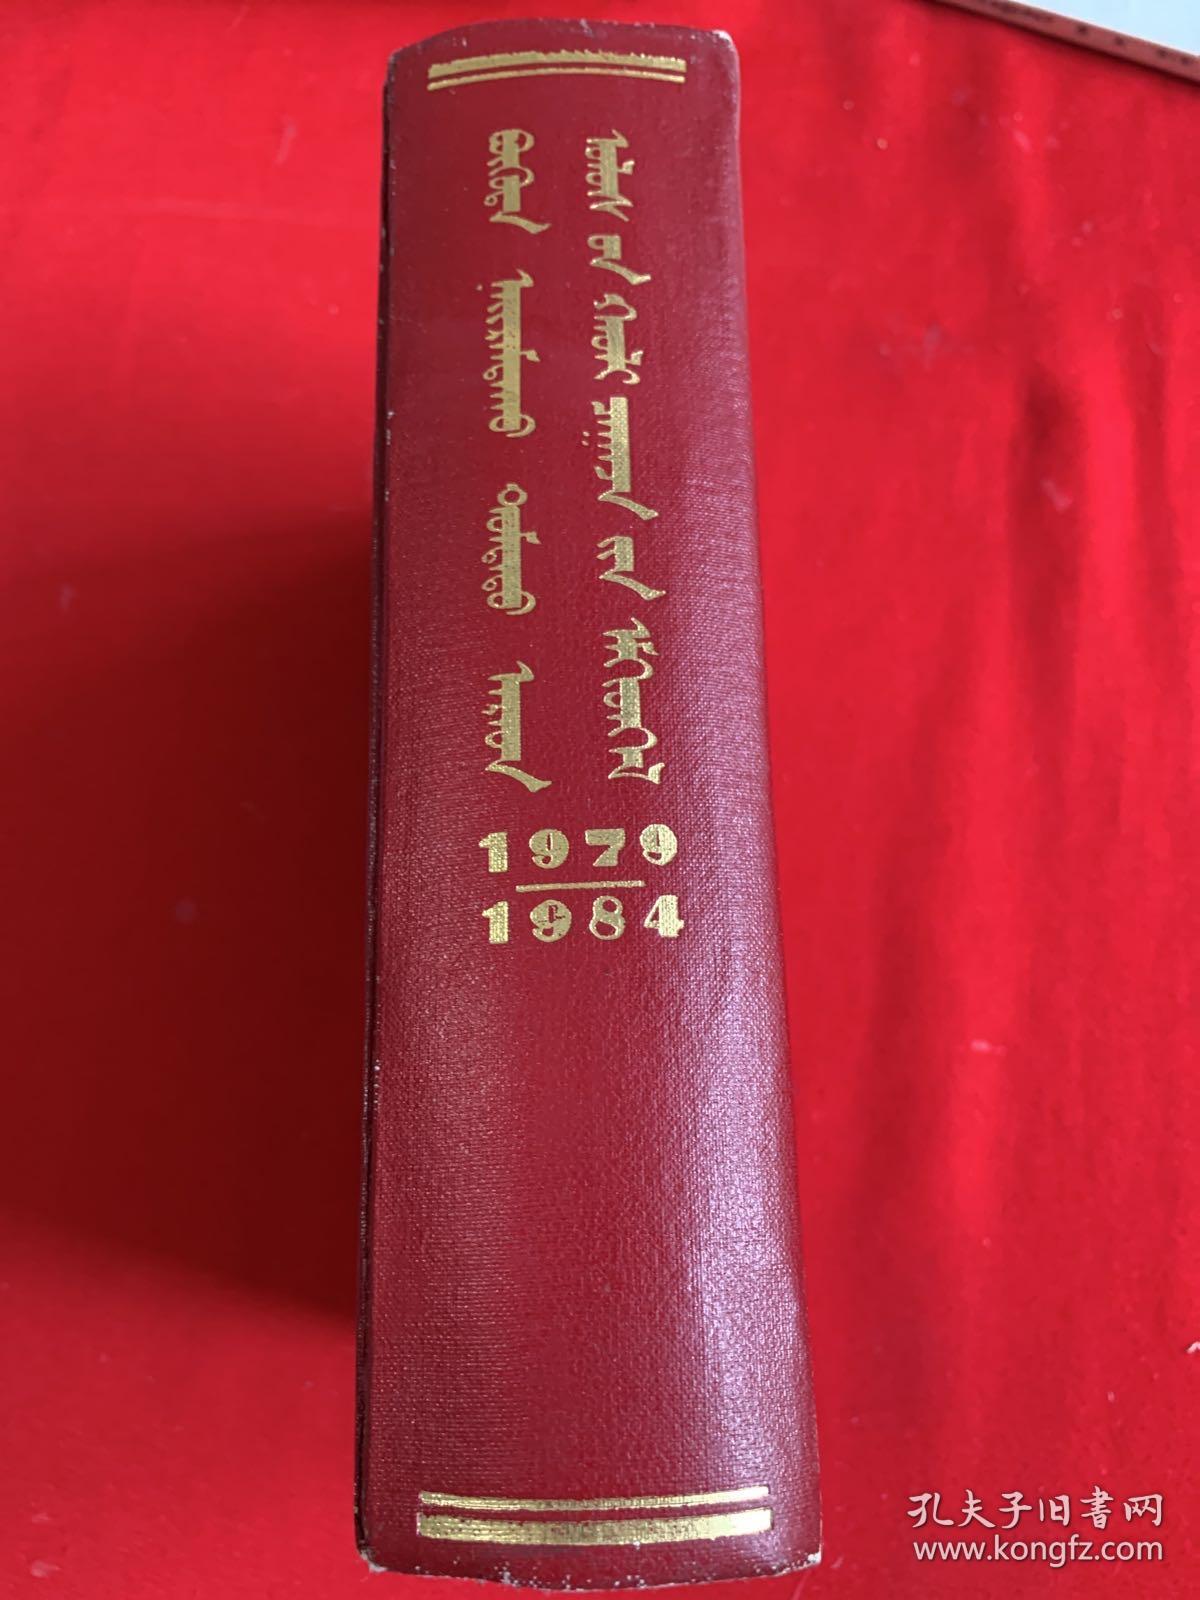 中华人民共和国法律汇编1979一1984    蒙文